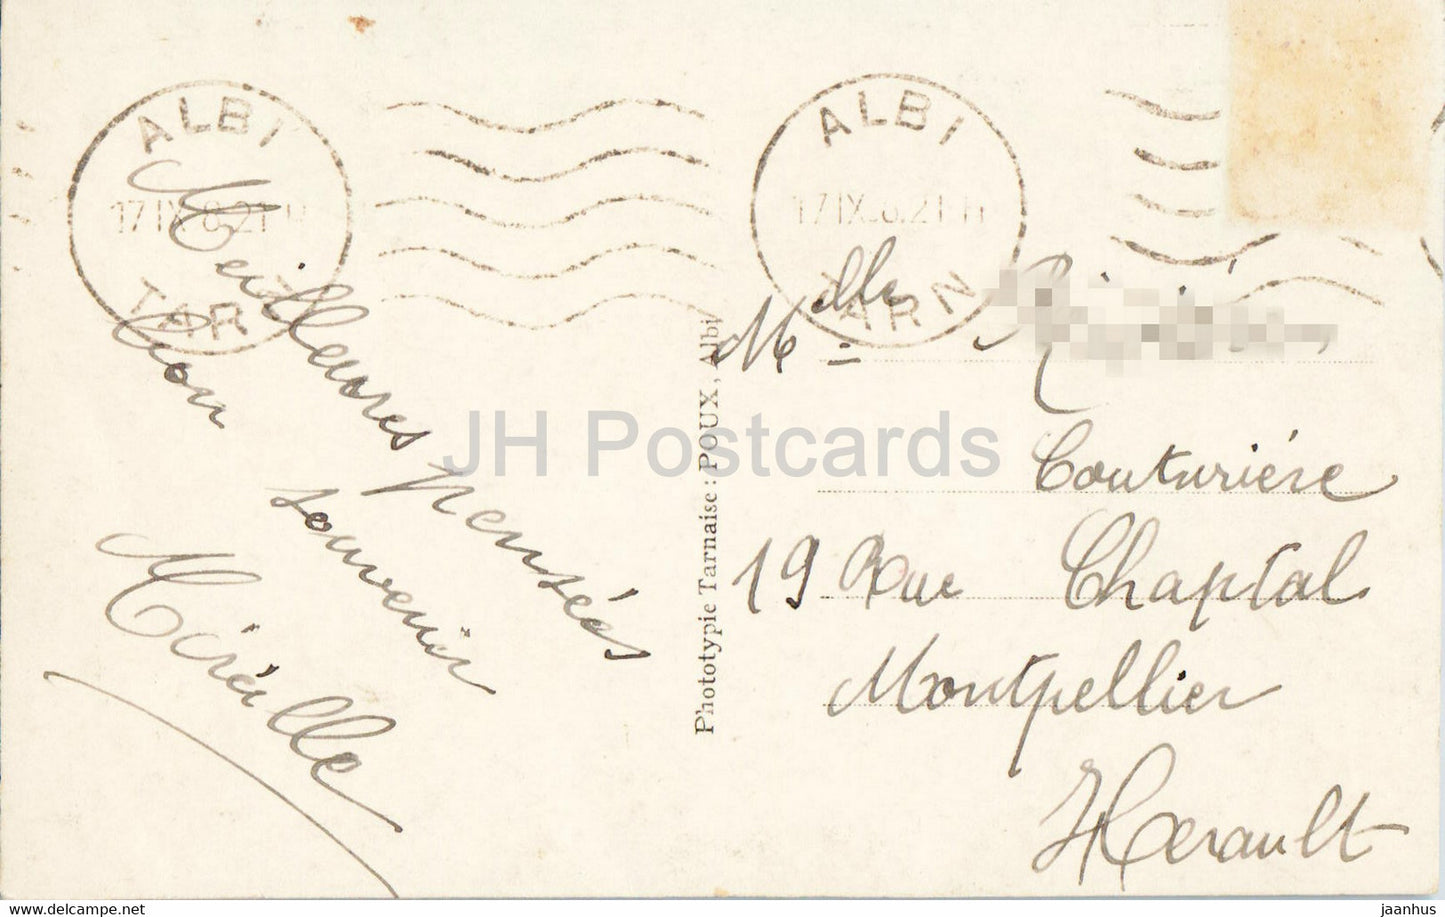 Albi - Viaduc du Chemin de Fer et Cathedrale - Kathedrale - 28 - alte Postkarte - 1921 - Frankreich - gebraucht